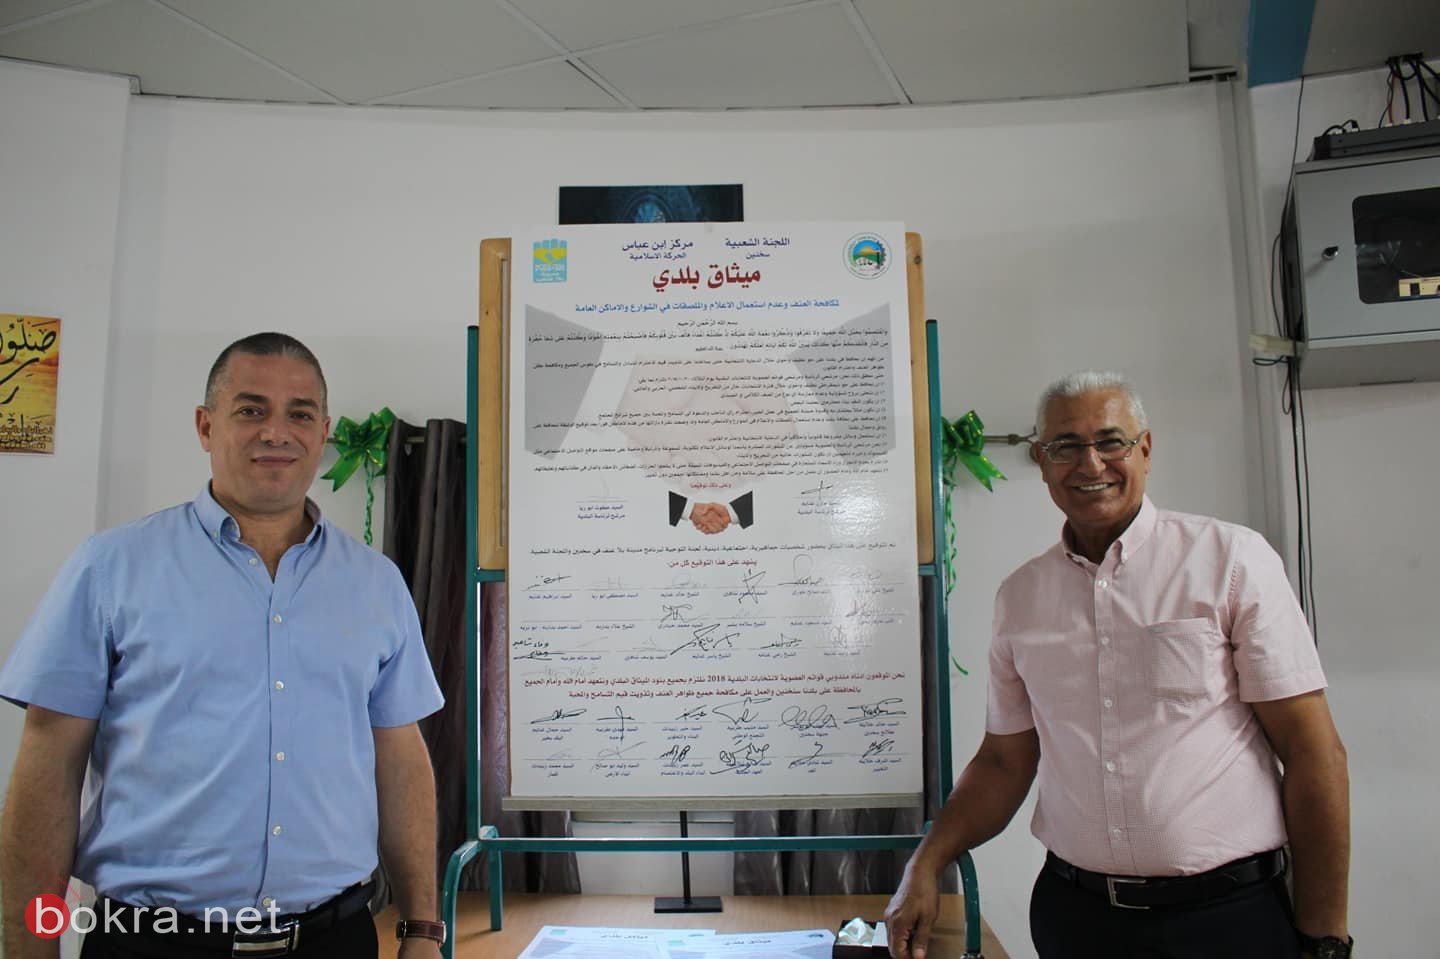 سخنين التوقيع على ميثاق شرف بين القوائم المتنافسة "بعنوان "ميثاق بلدي" -25